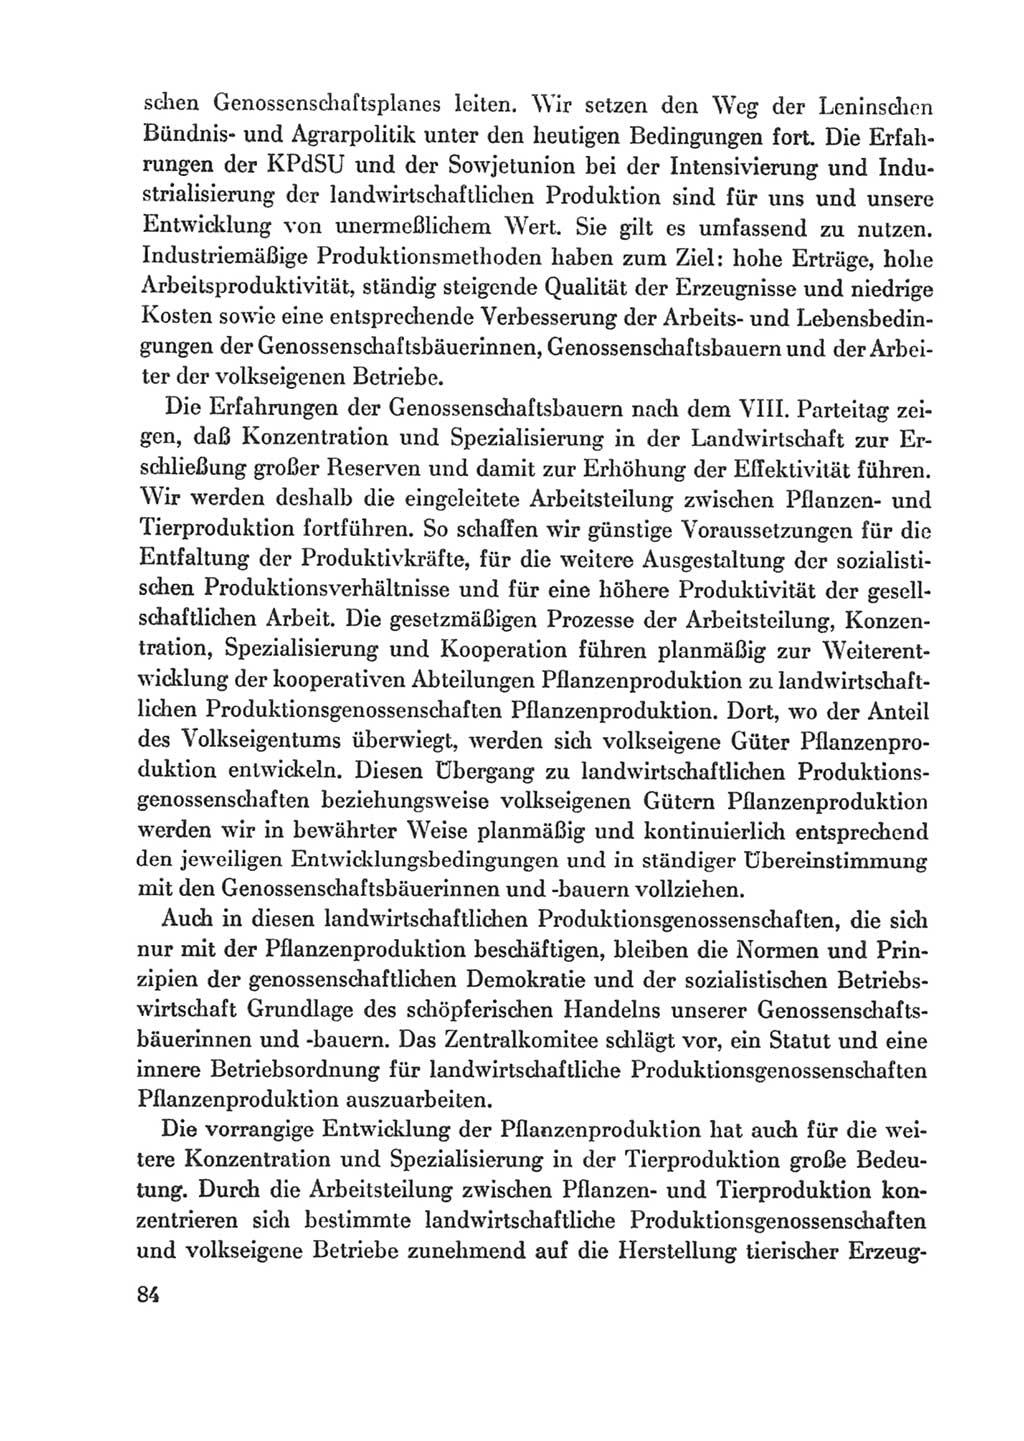 Protokoll der Verhandlungen des Ⅸ. Parteitages der Sozialistischen Einheitspartei Deutschlands (SED) [Deutsche Demokratische Republik (DDR)] 1976, Band 1, Seite 84 (Prot. Verh. Ⅸ. PT SED DDR 1976, Bd. 1, S. 84)